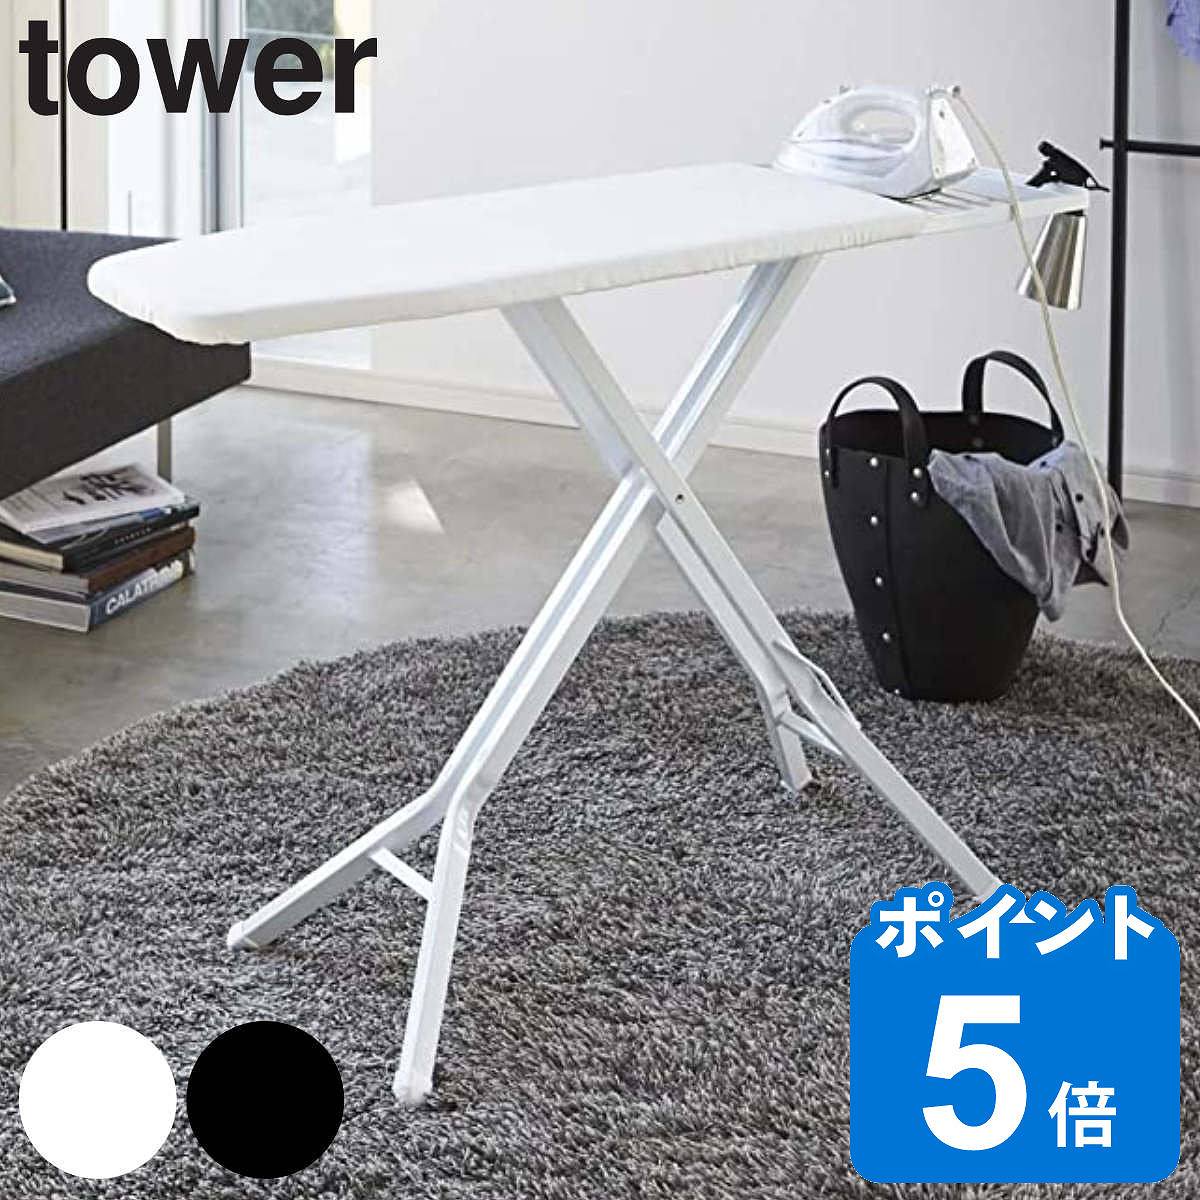 山崎実業 tower スタンド式アイロン台 タワー